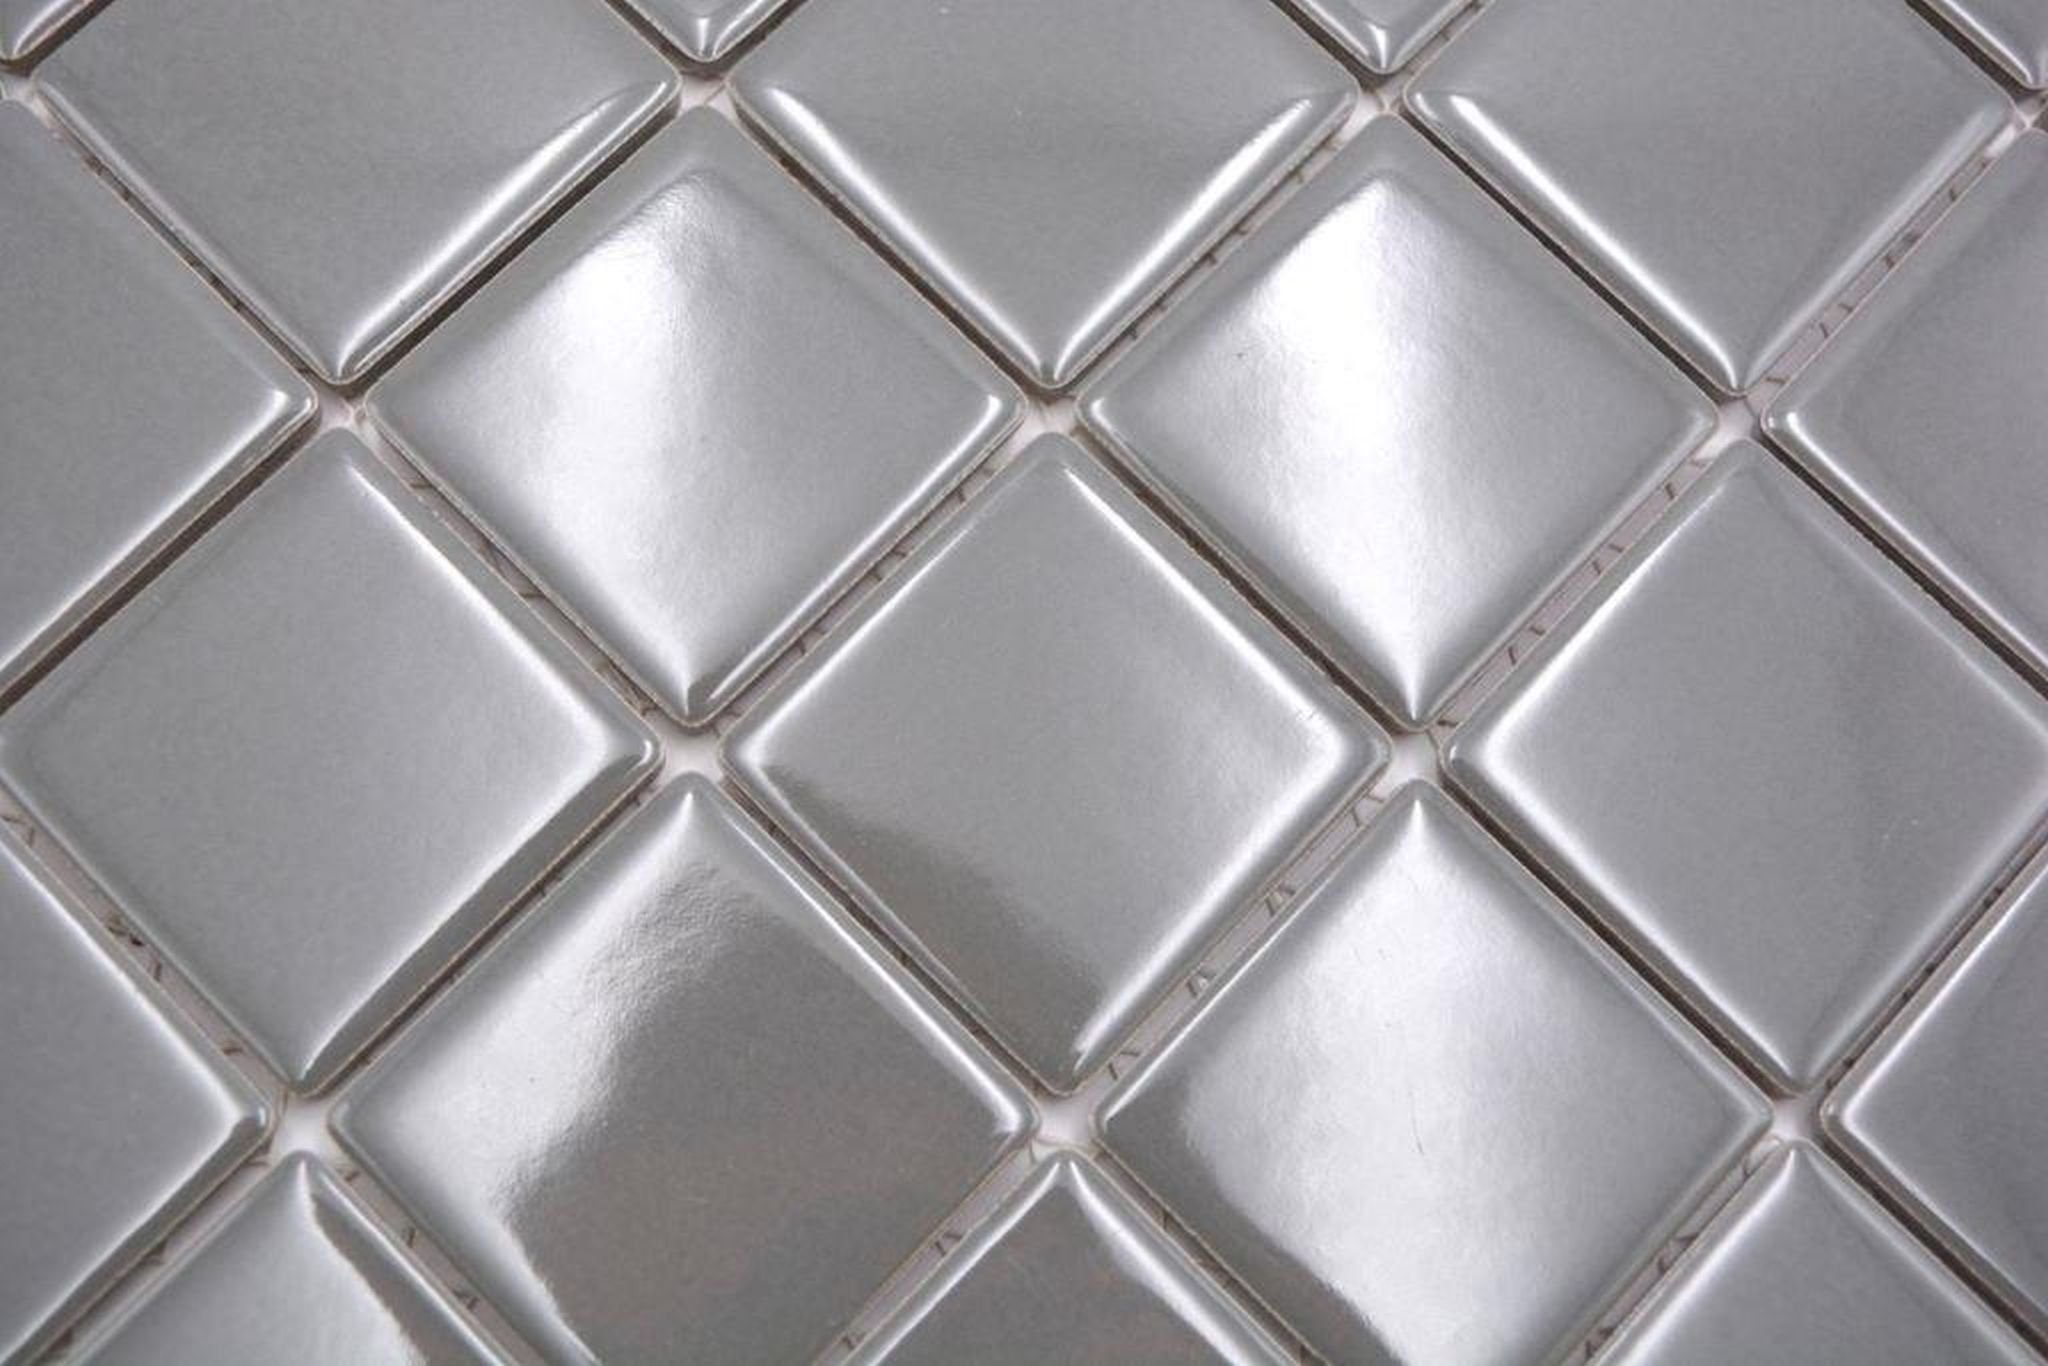 Mosani Mosaikfliesen Keramik Mosaik Fliese Fliesenspiegel metall glänzend Küchenwand grau